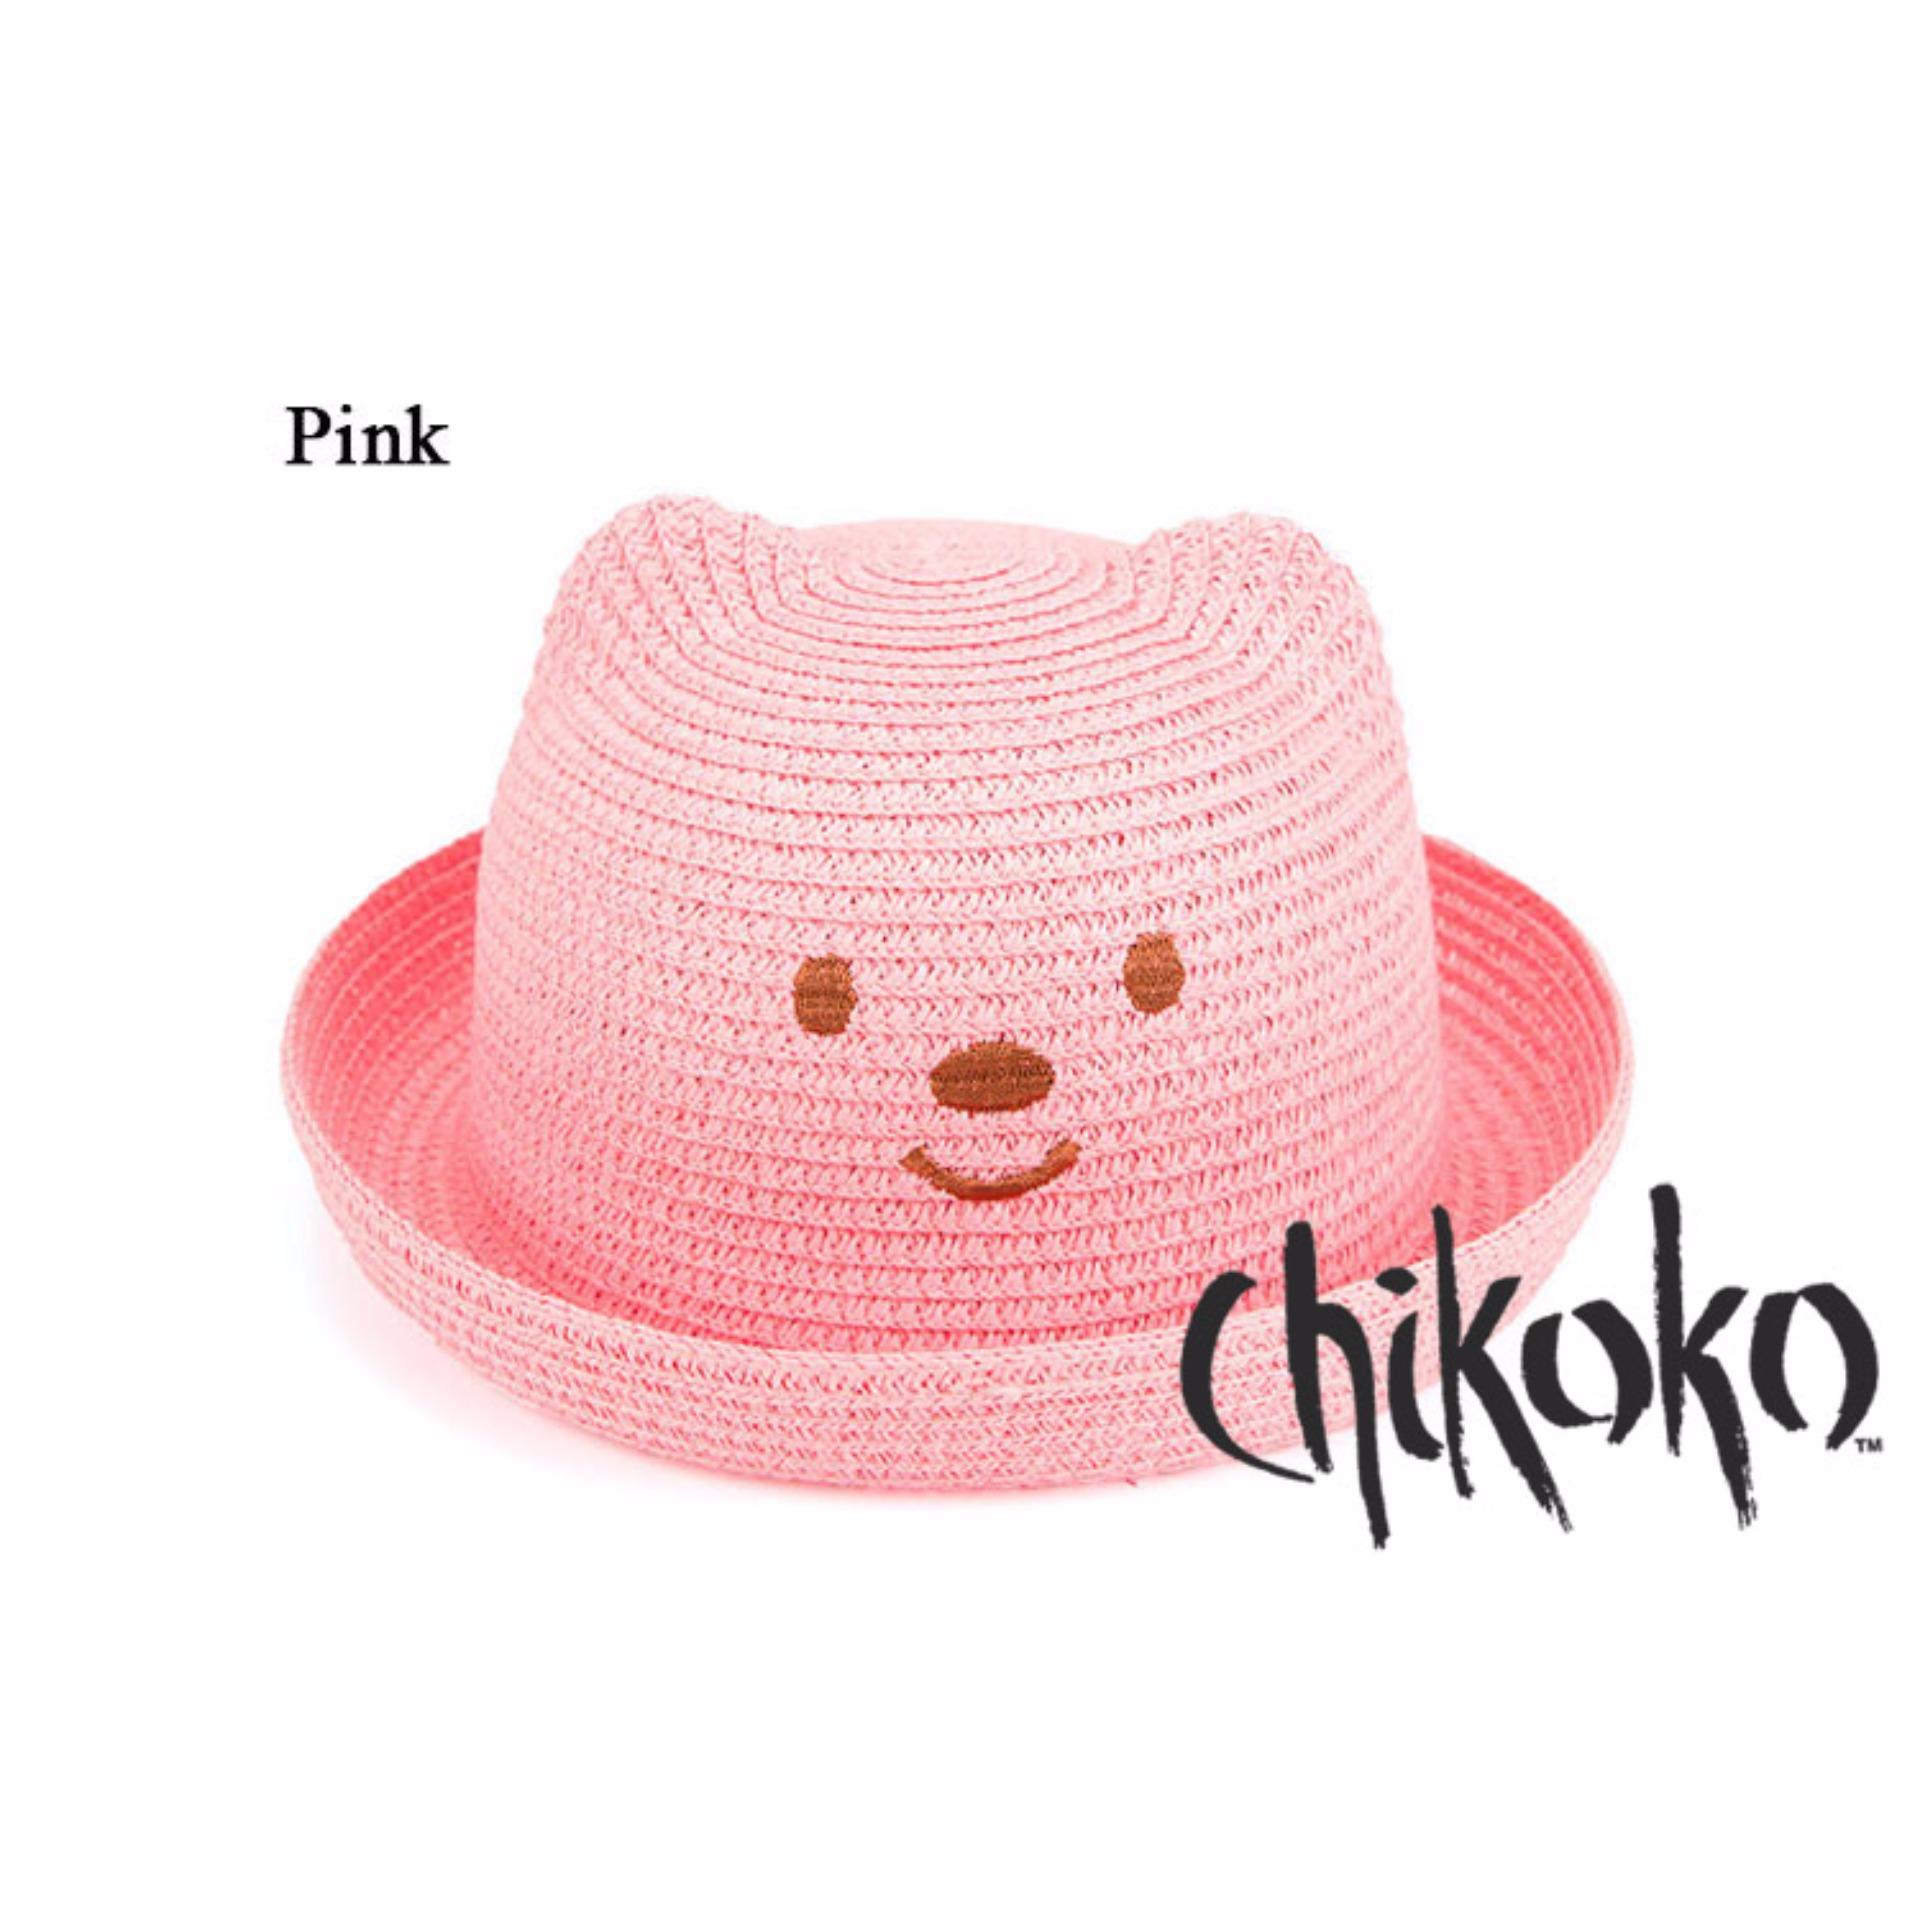 Mũ Gấu Xinh Cho Bé Yêu Chikoko (hồng)